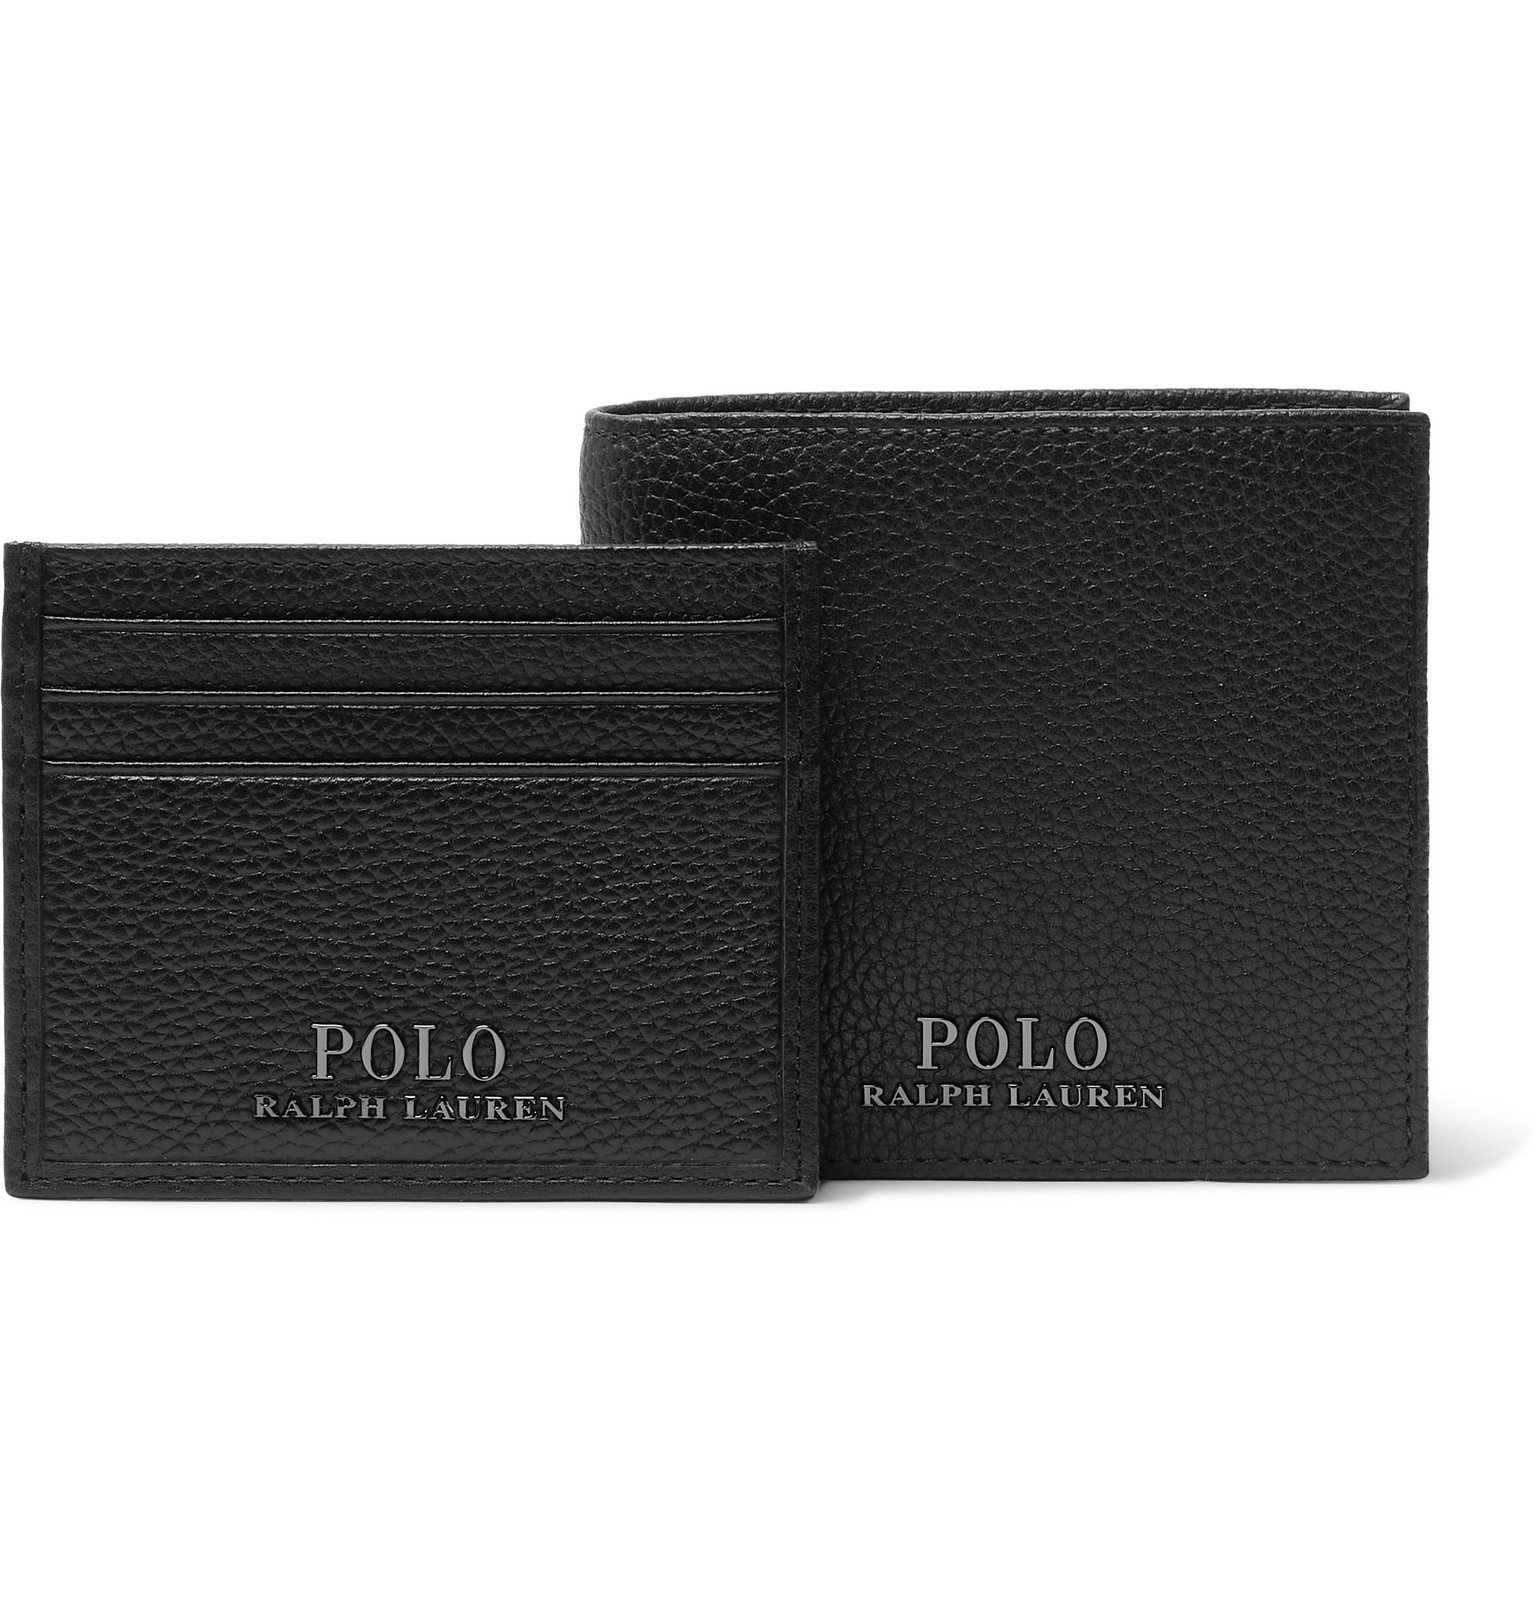 Polo Ralph Lauren - Full-Grain Leather Billfold Wallet And Cardholder Gift  Set - Black Polo Ralph Lauren